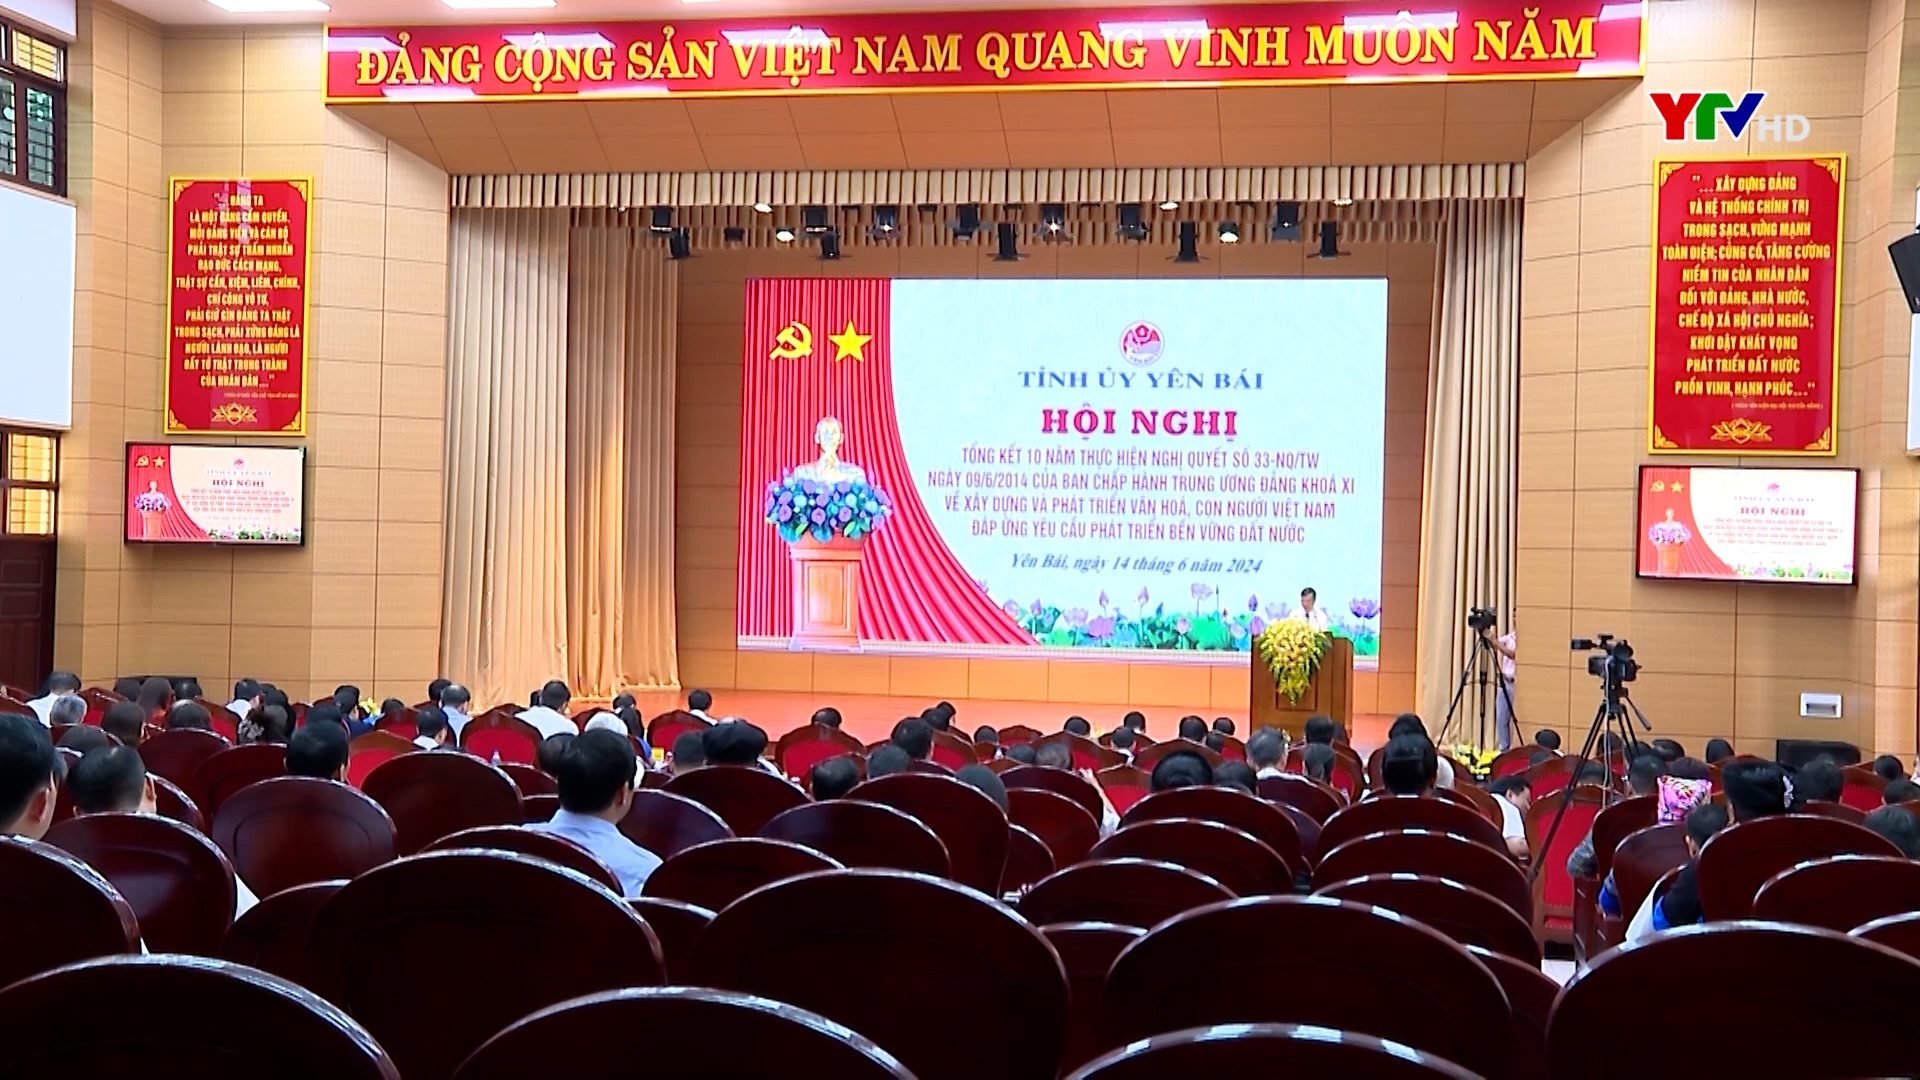 Yên Bái tổng kết 10 năm thực hiện Nghị quyết 33 về xây dựng và phát triển văn hóa, con người Việt Nam